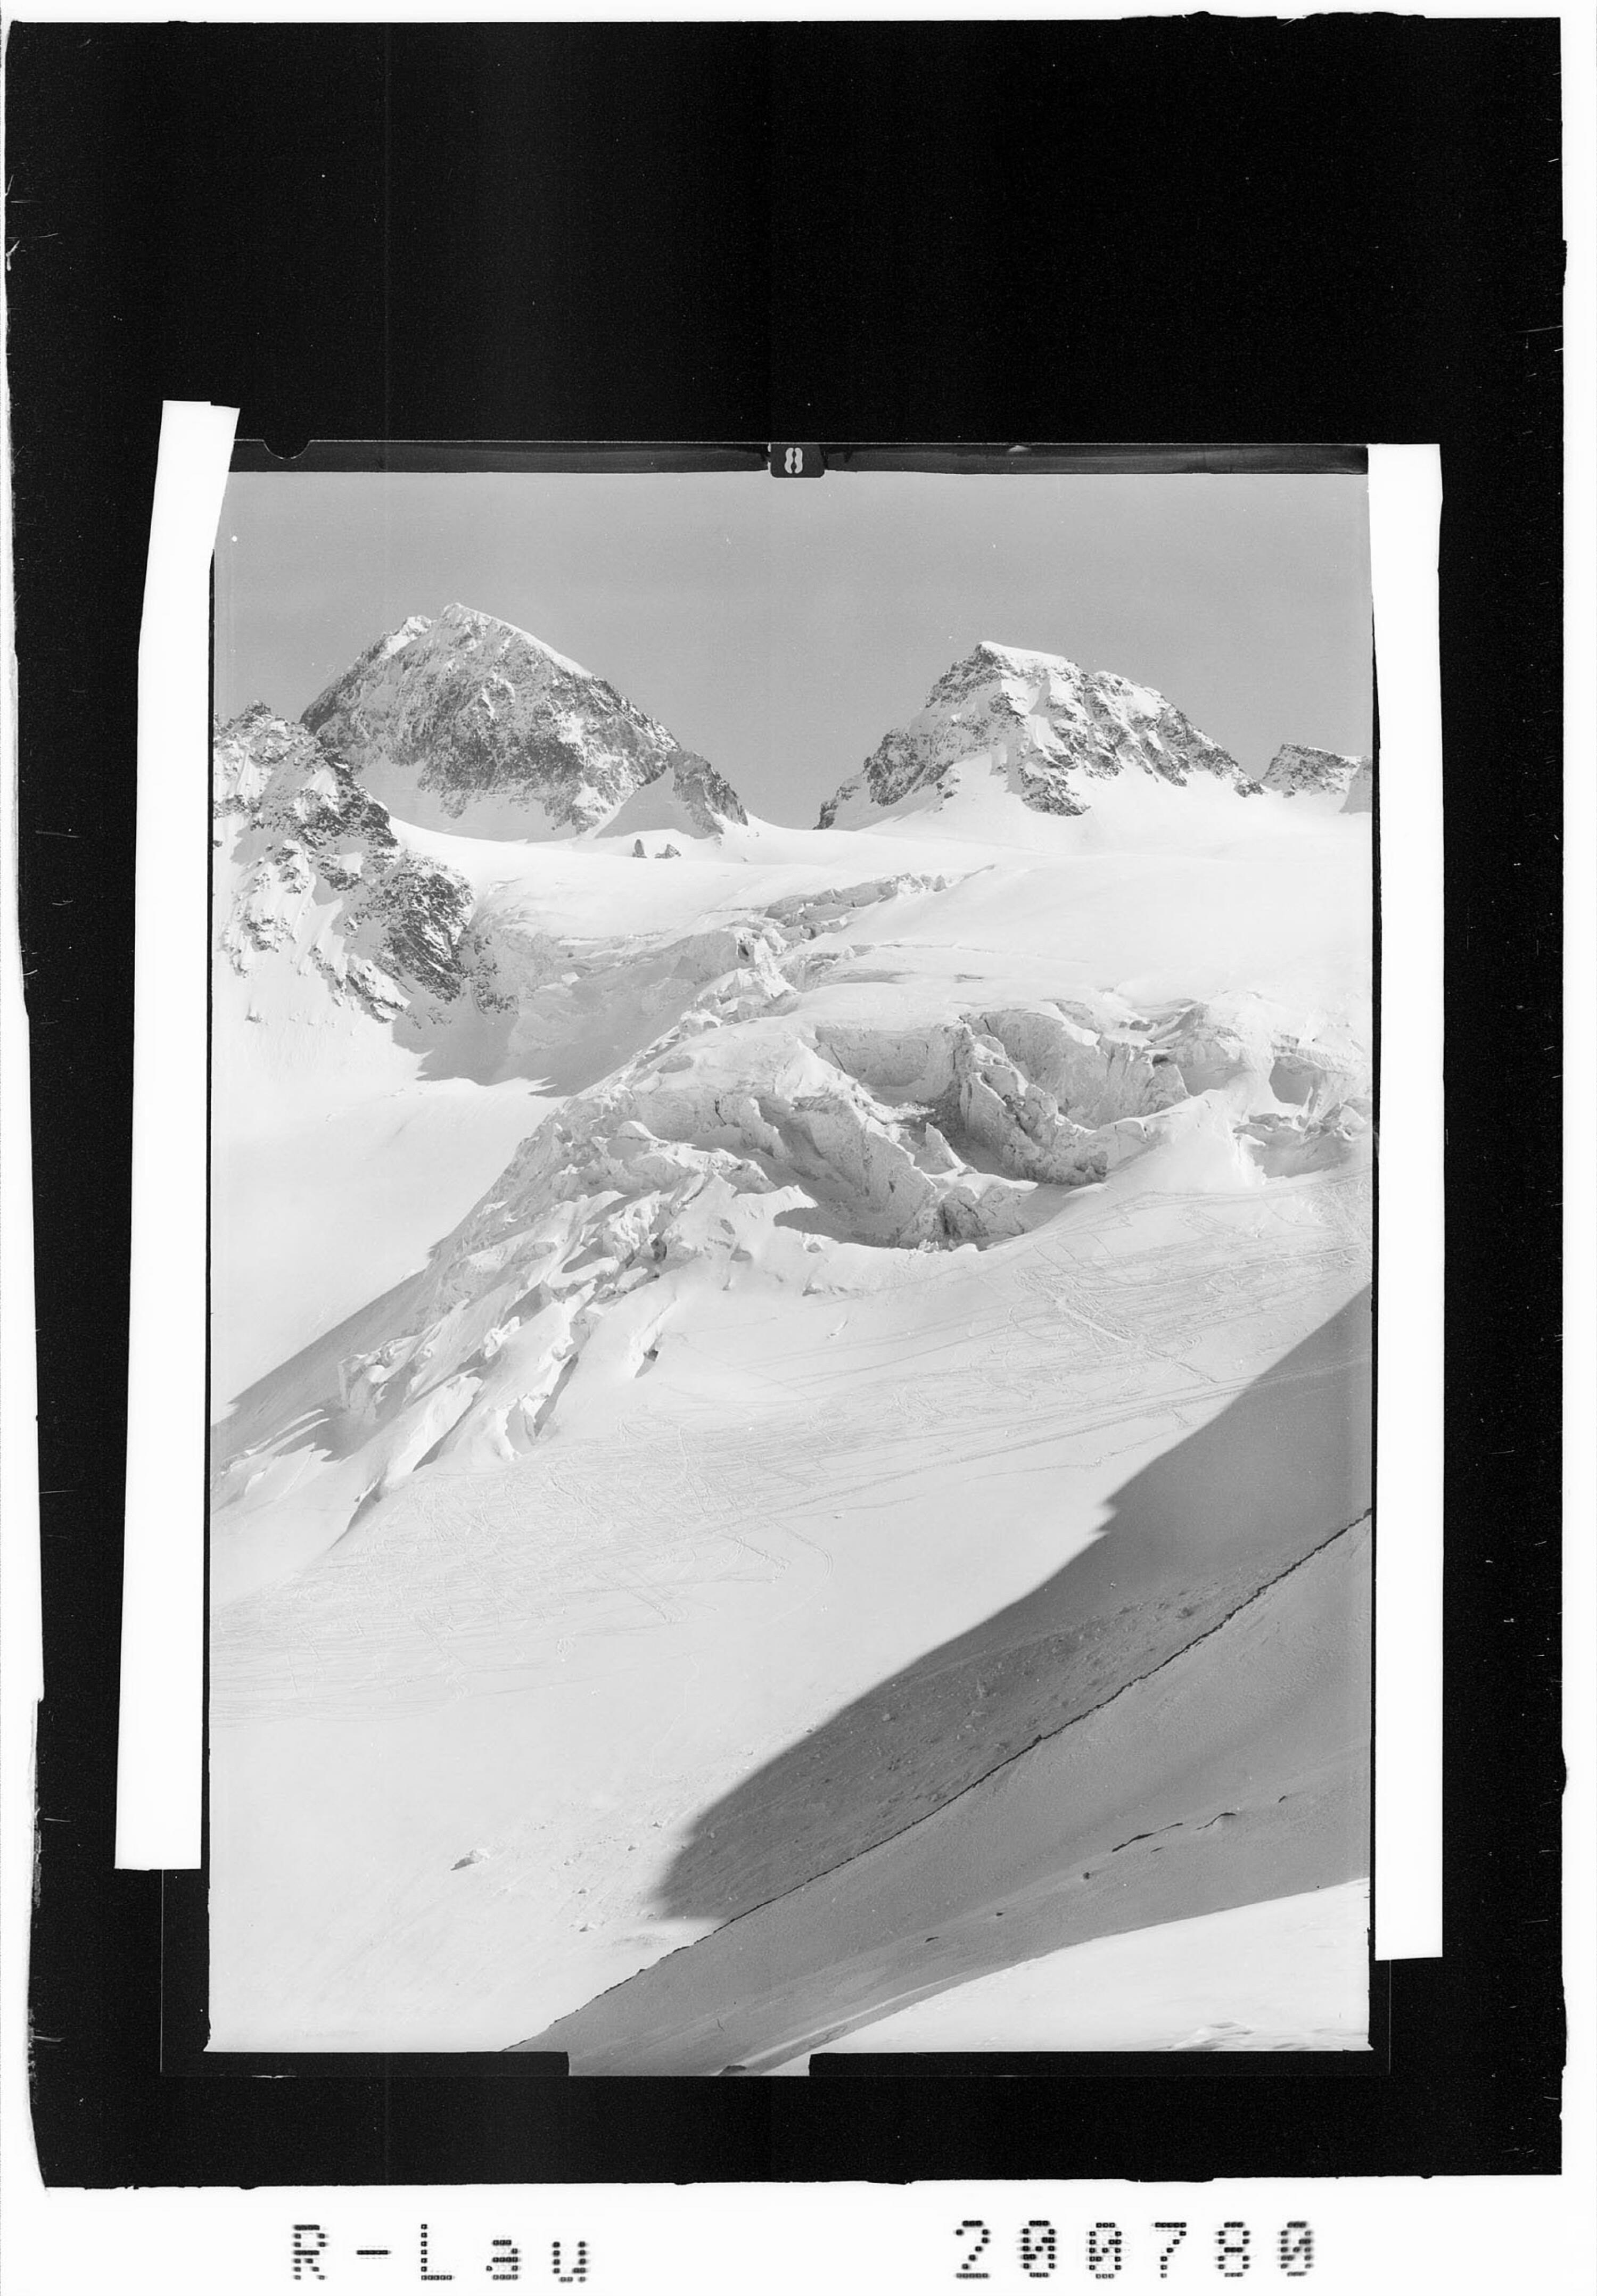 Grosser Piz Buin 3312 m, Kl.Piz Buin 3260 m, Abfahrt durch den Eisbruch></div>


    <hr>
    <div class=